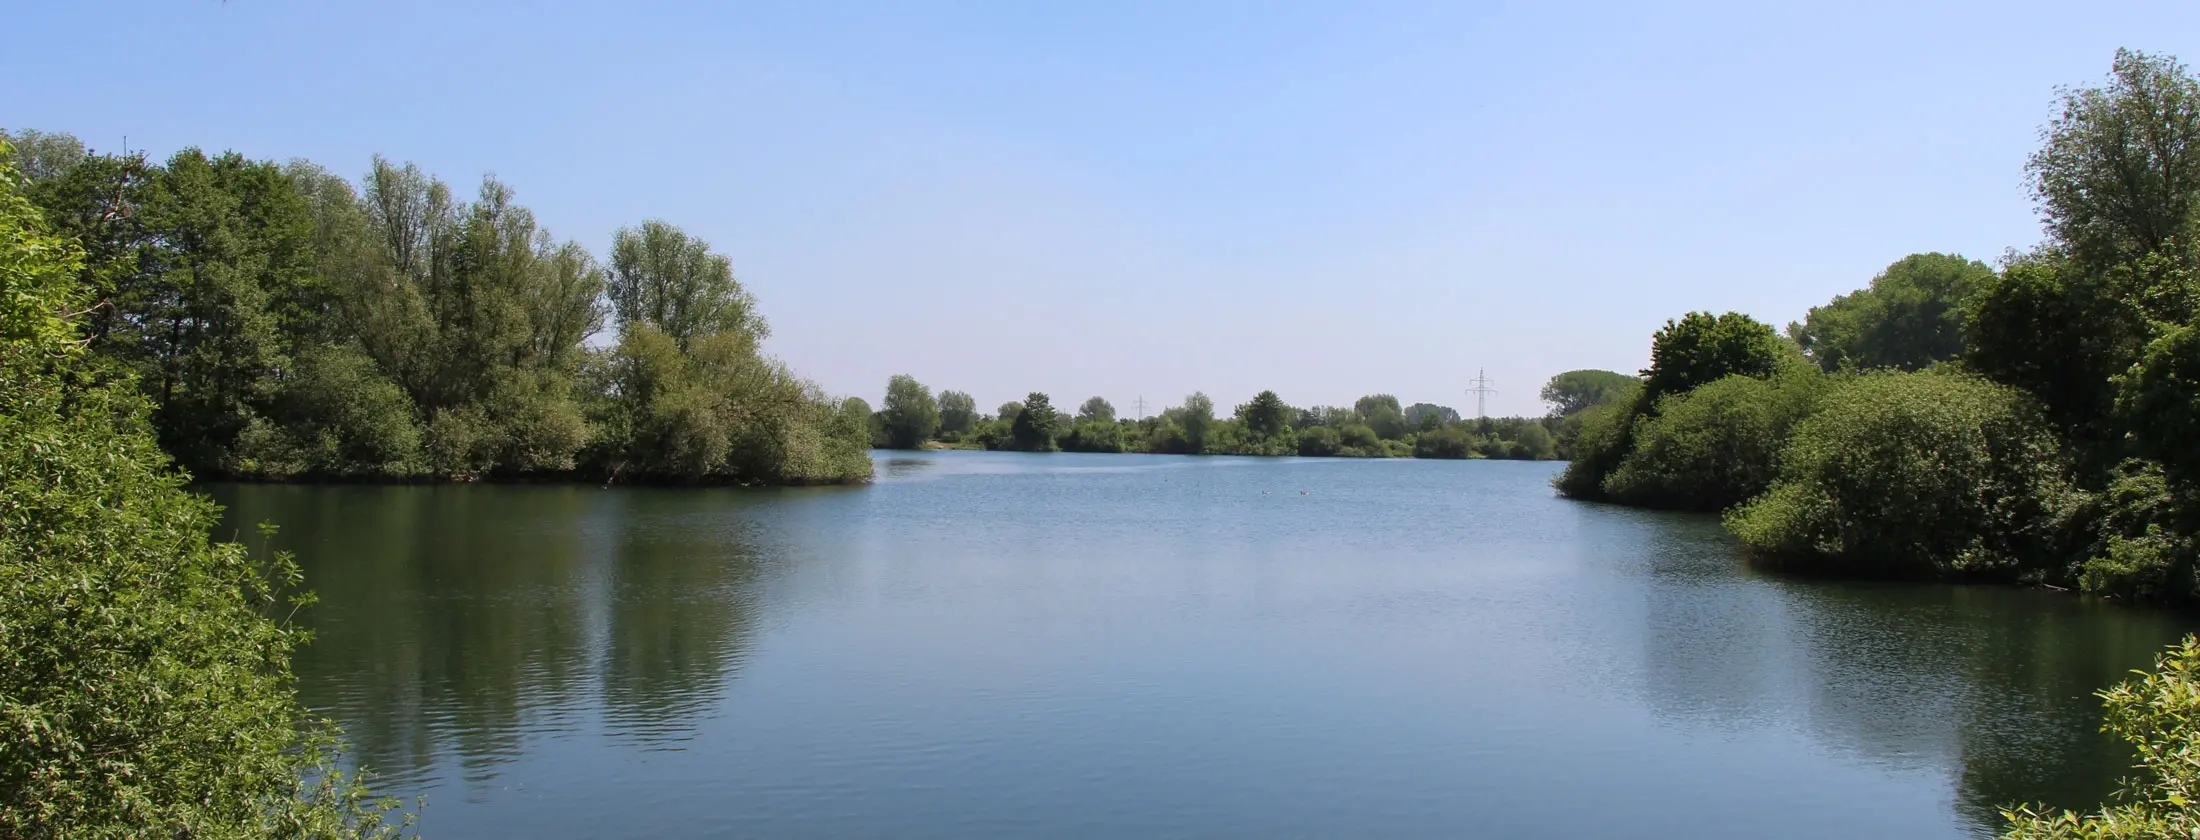 Bild vom Arnumer See im “Naherholungspark Arnum“ im Stadtteil Arnum, der zu Hemmingen in Niedersachsen gehört, aufgenommen an einem Sommertag.